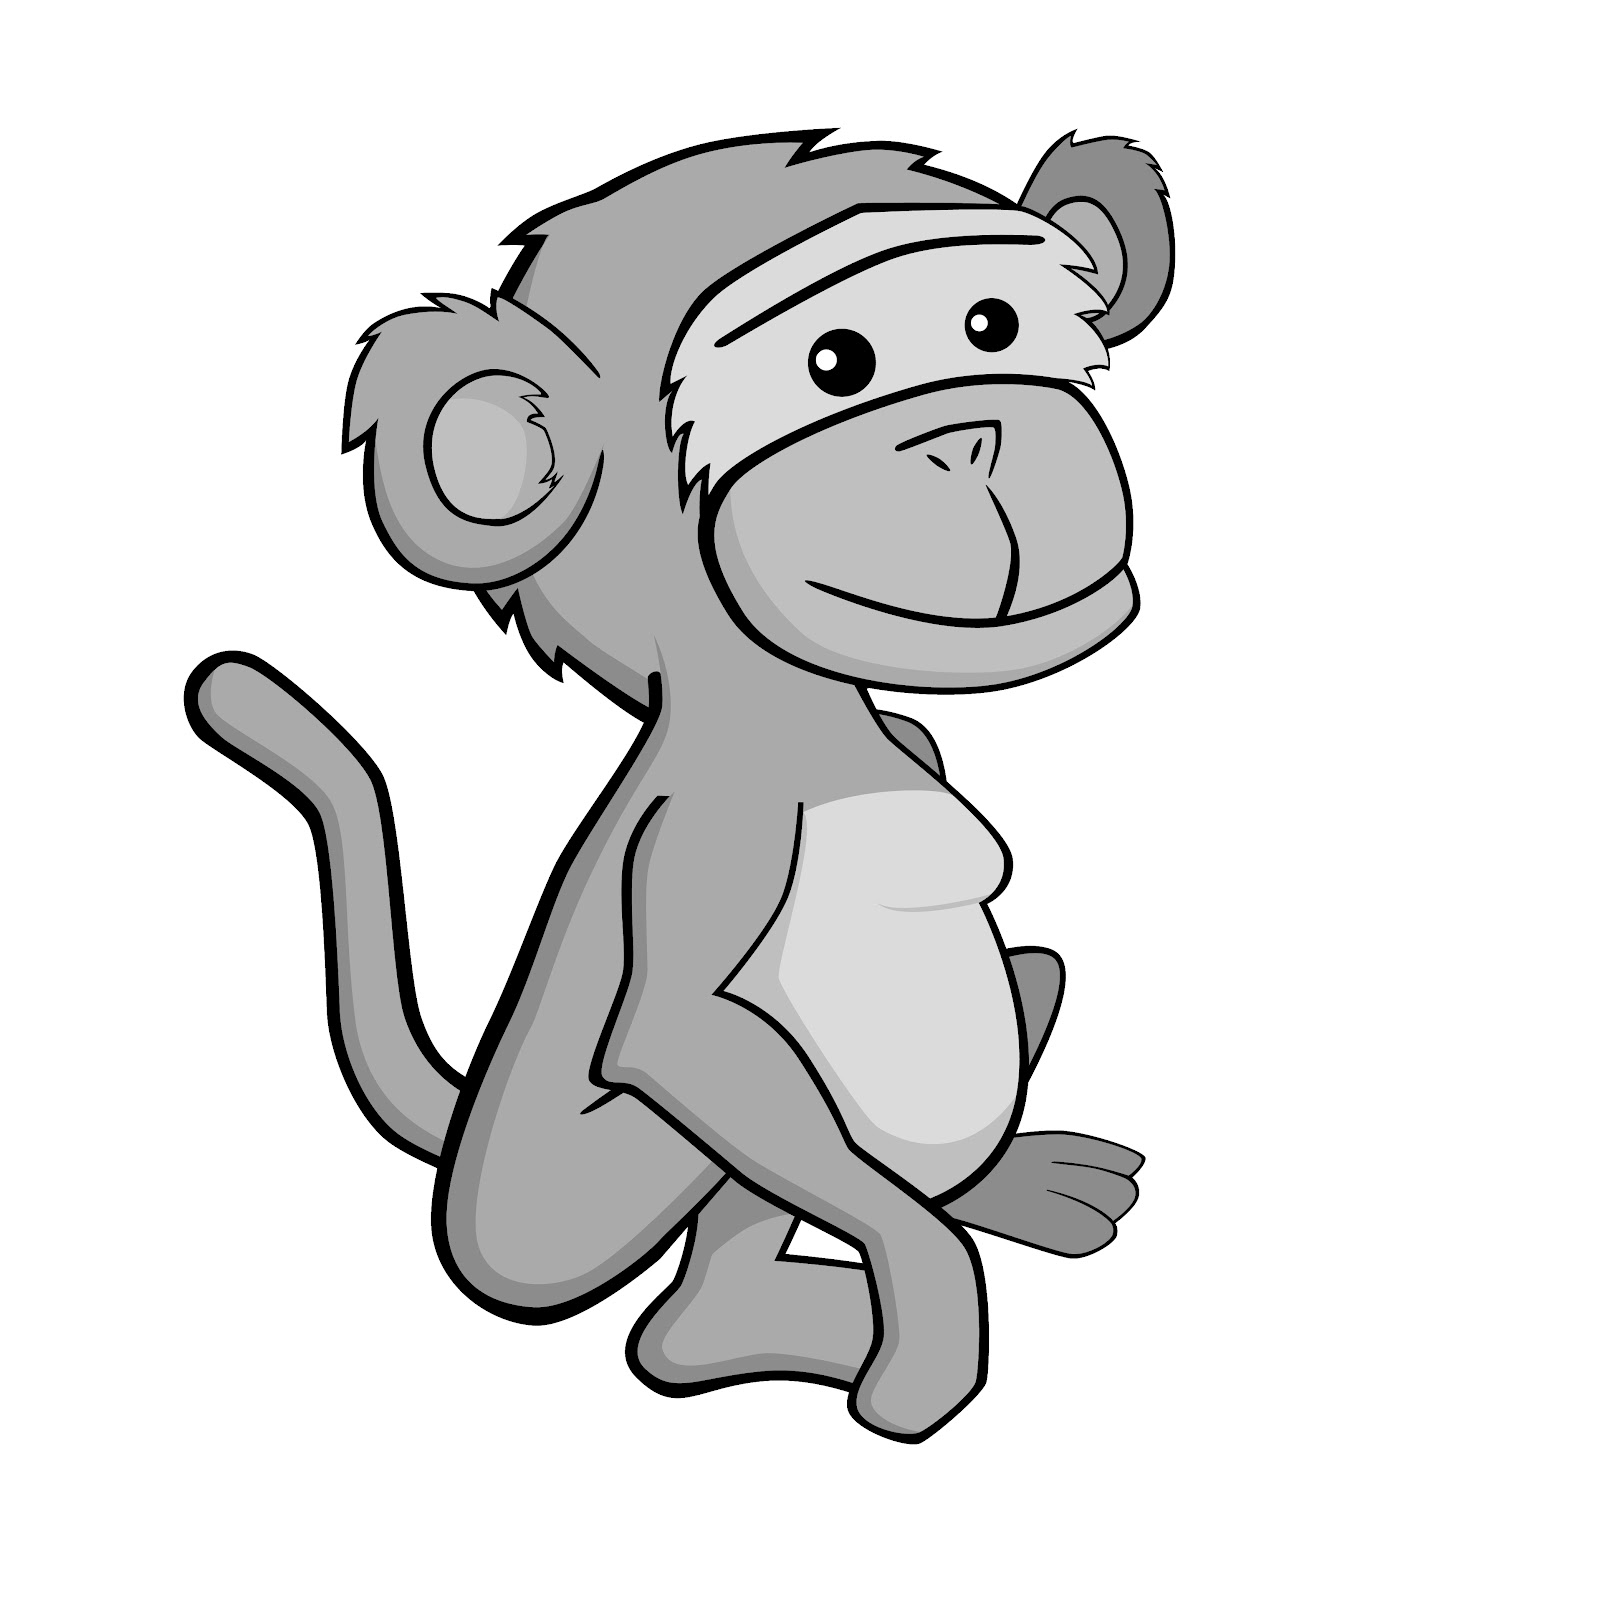 clipart monkey grey